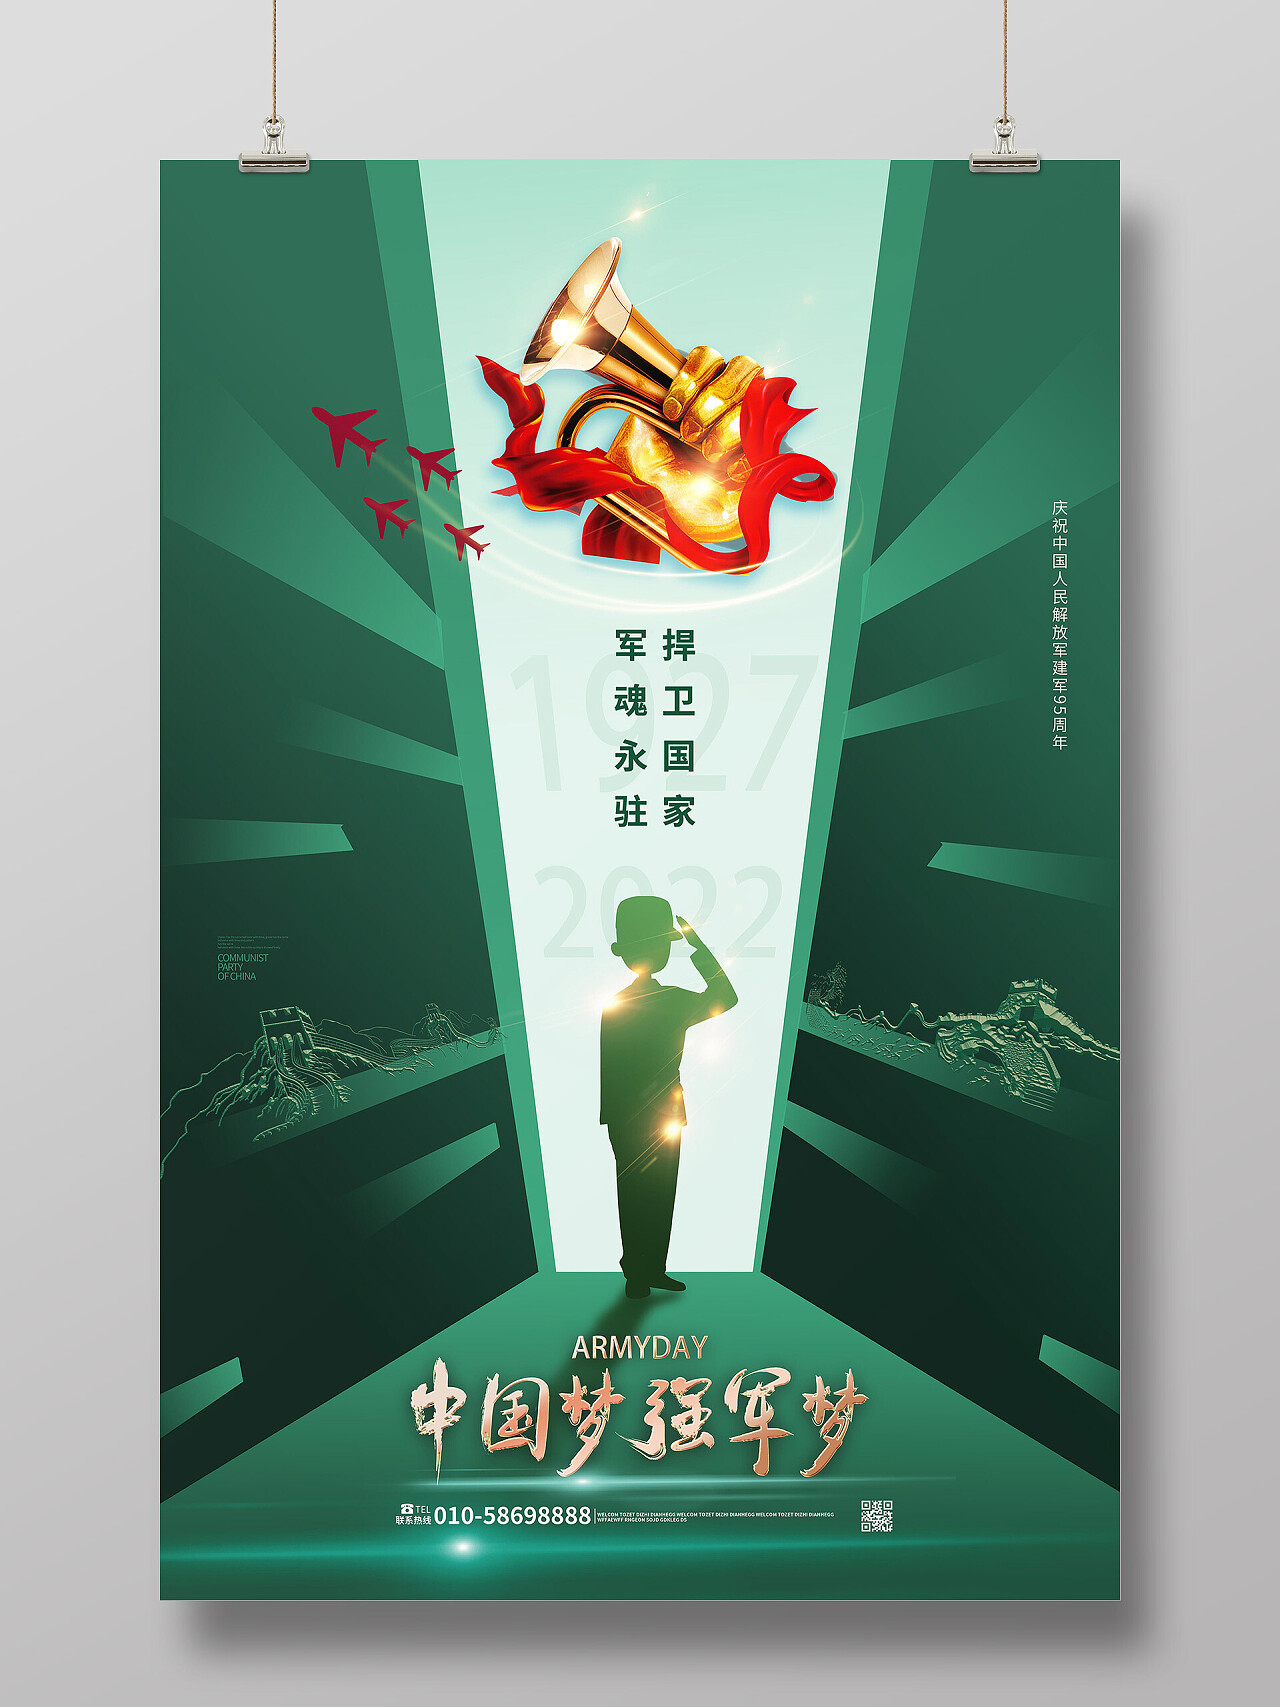 绿色背景创意简洁中国梦强军梦建军节海报设计建军节节日